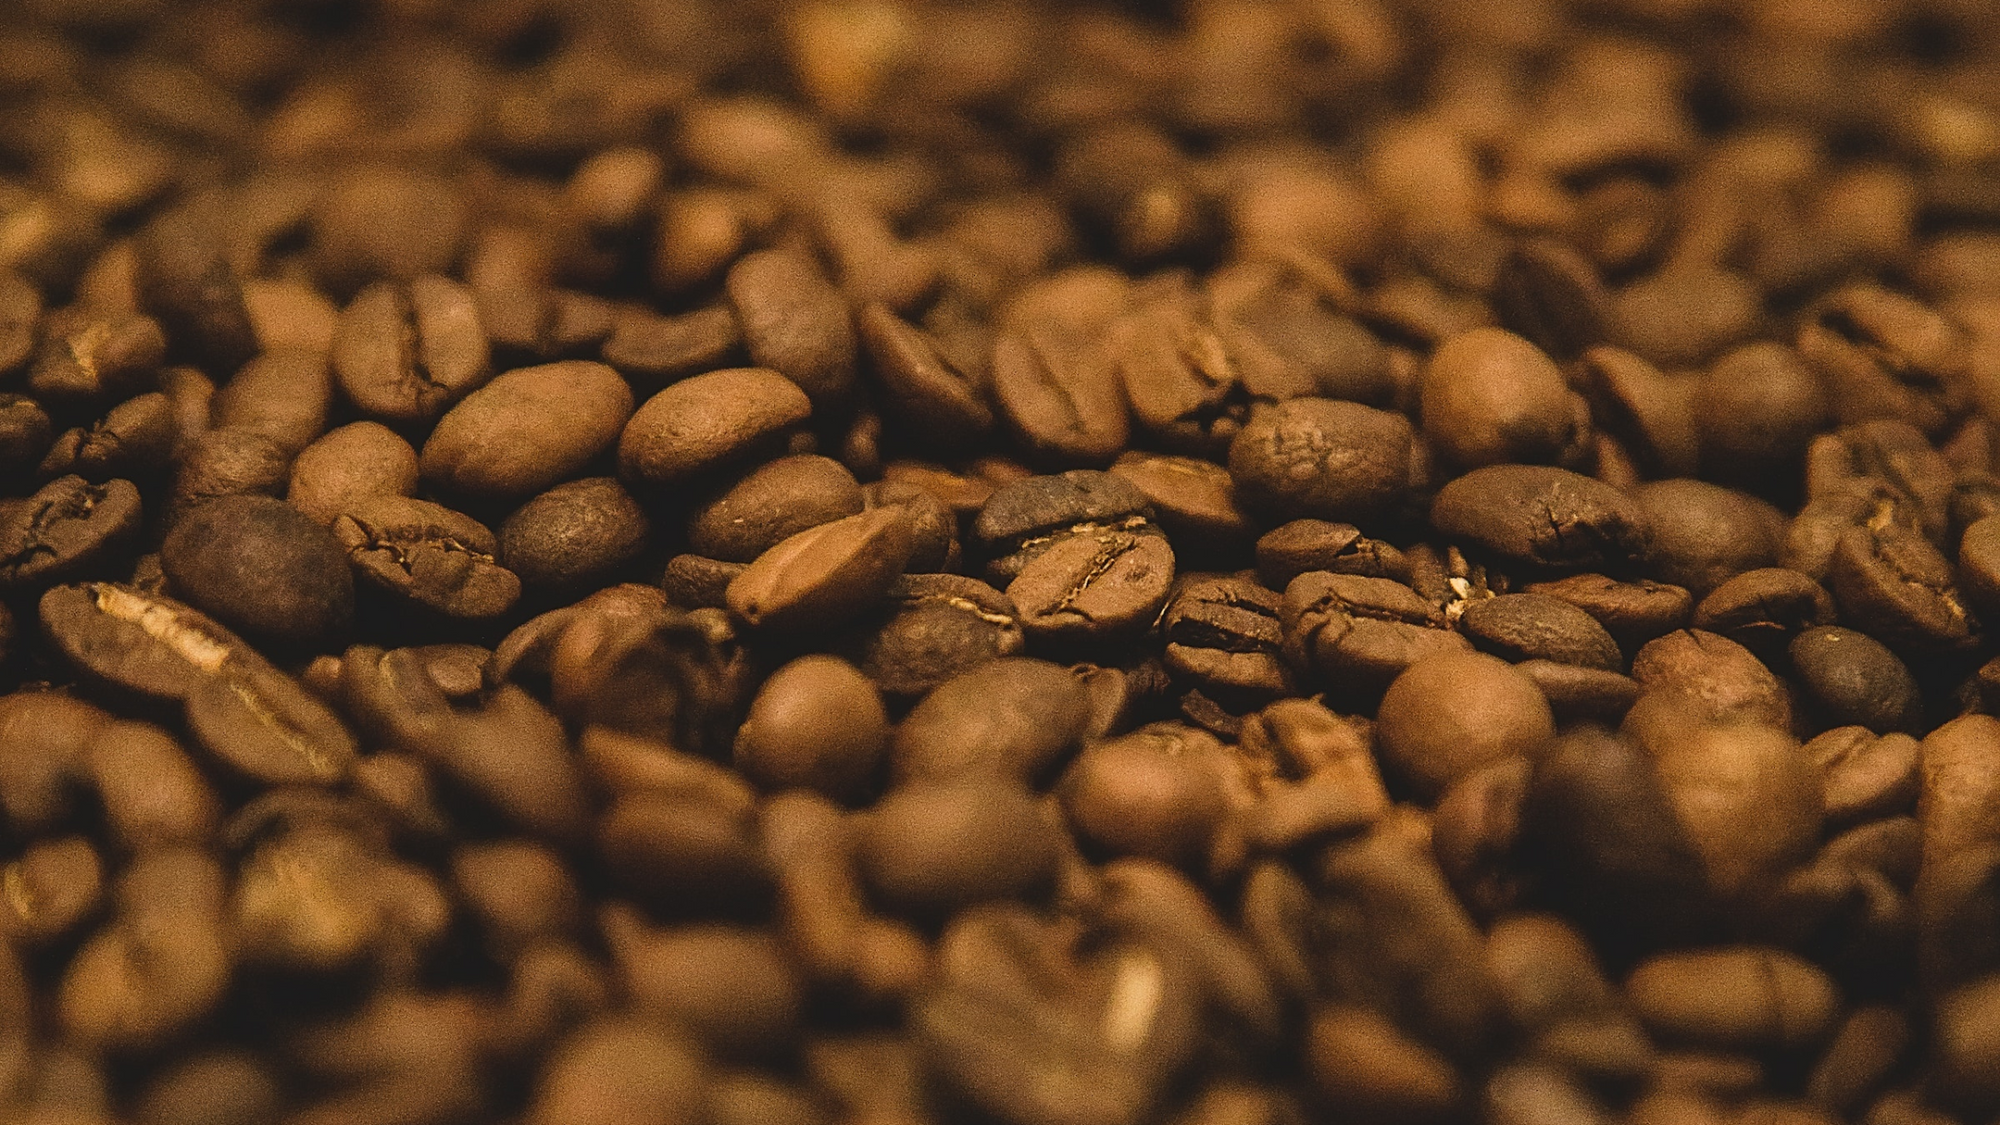 Image displays coffee beans taken by @visualsbyafrah